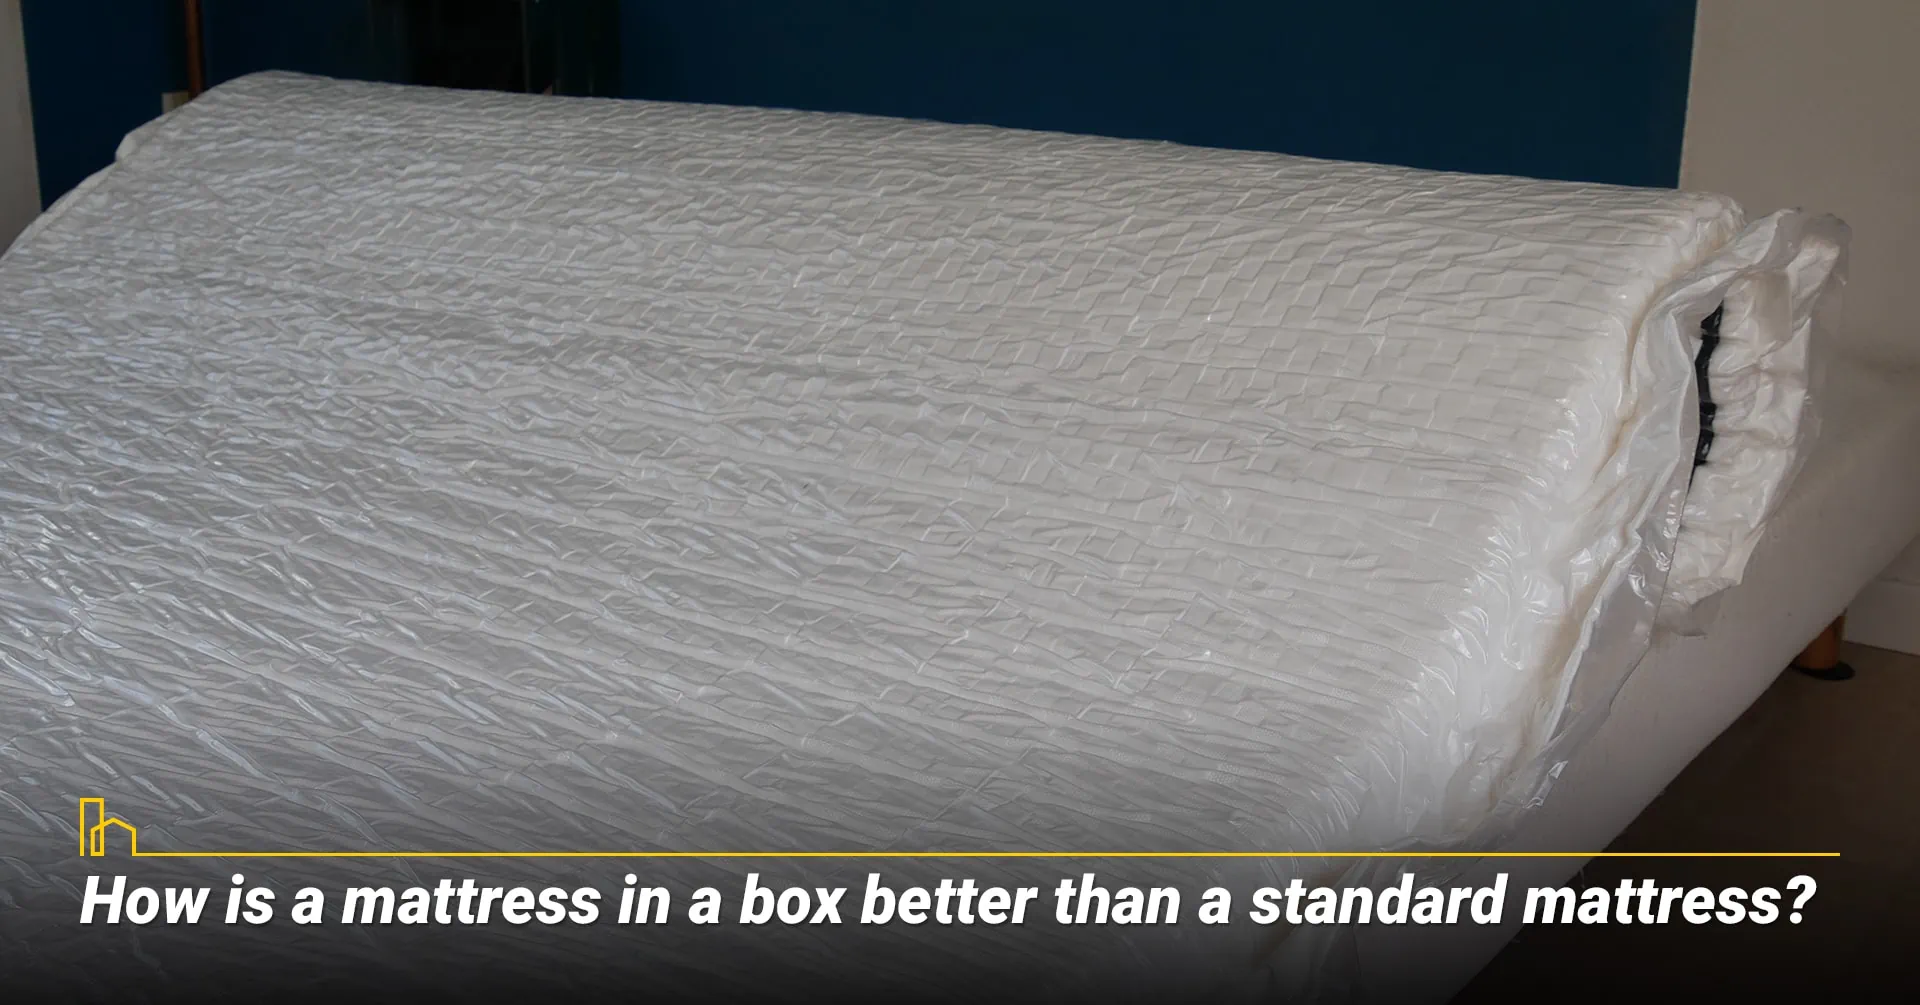 2. How is a mattress in a box better than a standard mattress?